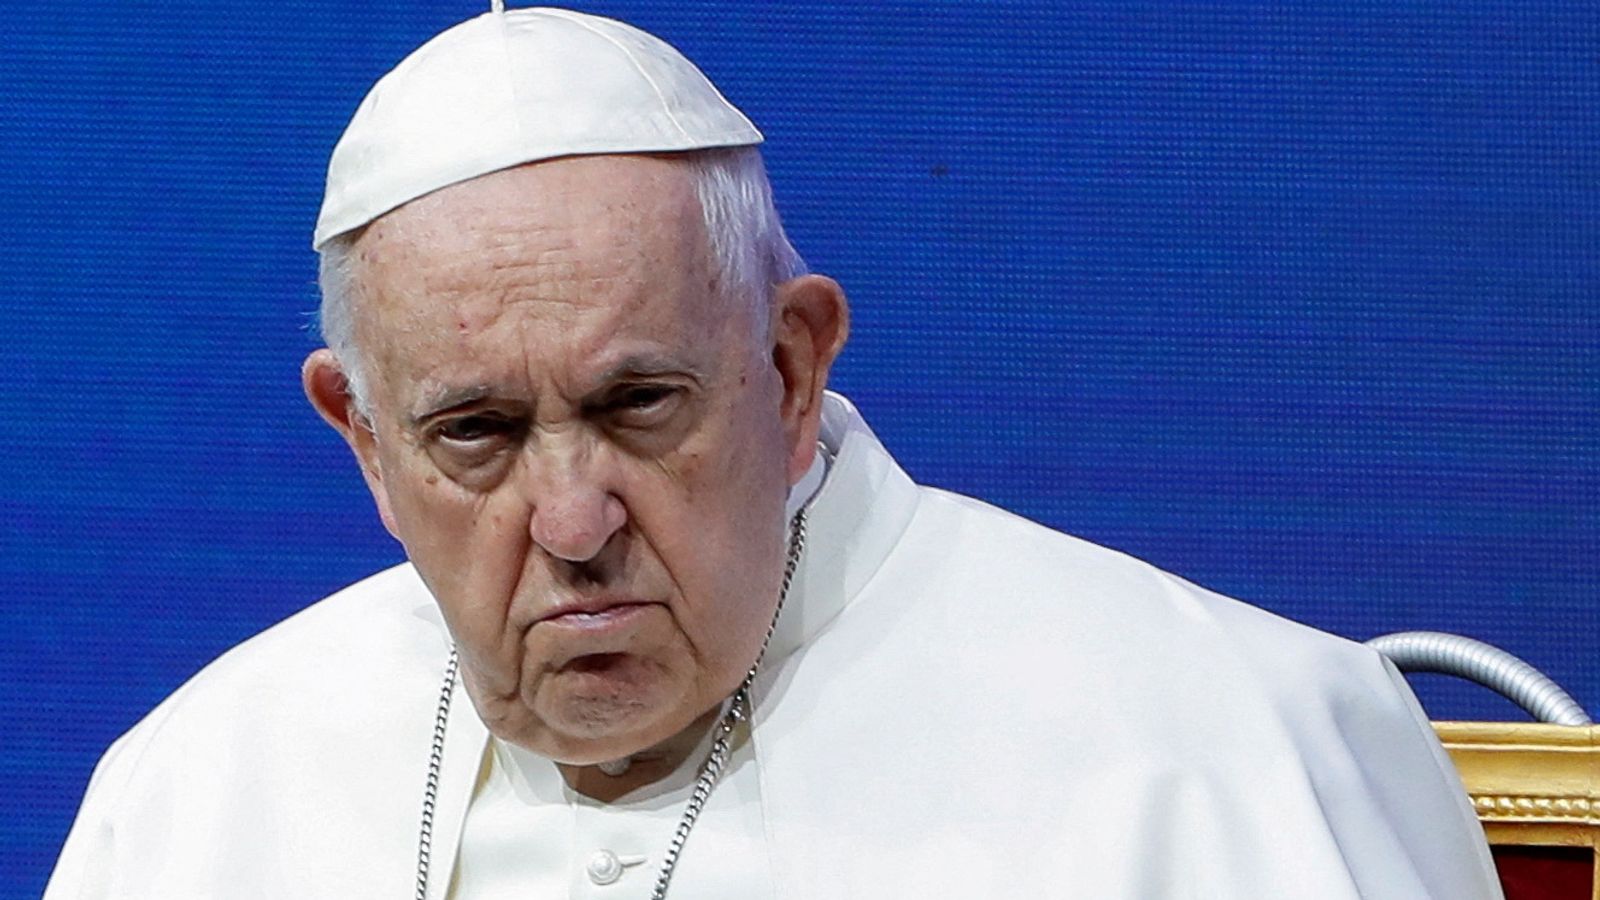 Le pape François passe une bonne deuxième nuit à l’hôpital et est dans un état stable après une chirurgie abdominale |  nouvelles du monde